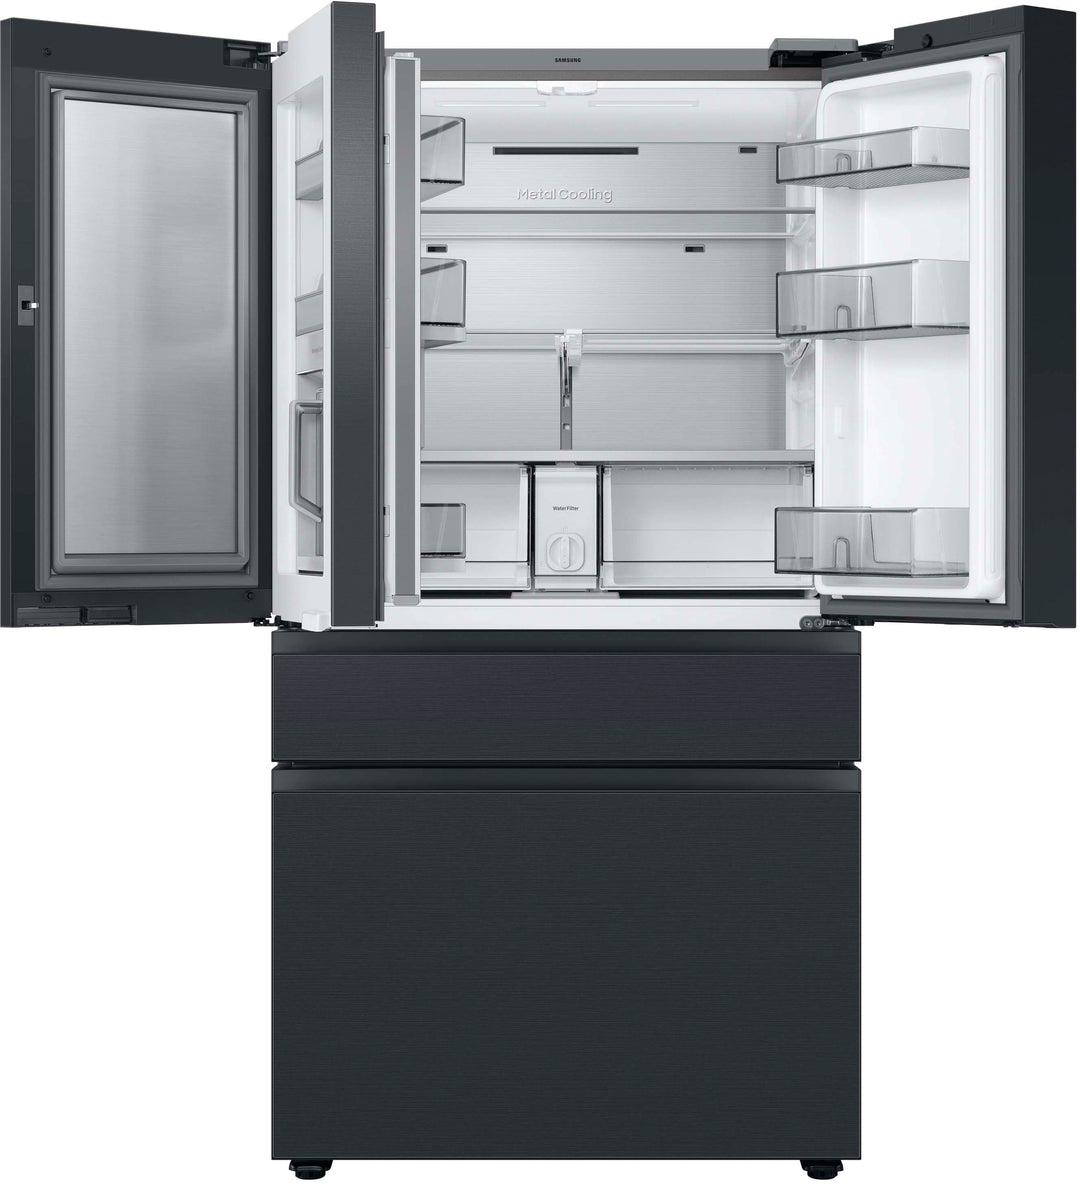 Samsung - 29 cu. ft. Bespoke 4-Door French Door Refrigerator with Family Hub - Matte black steel_3